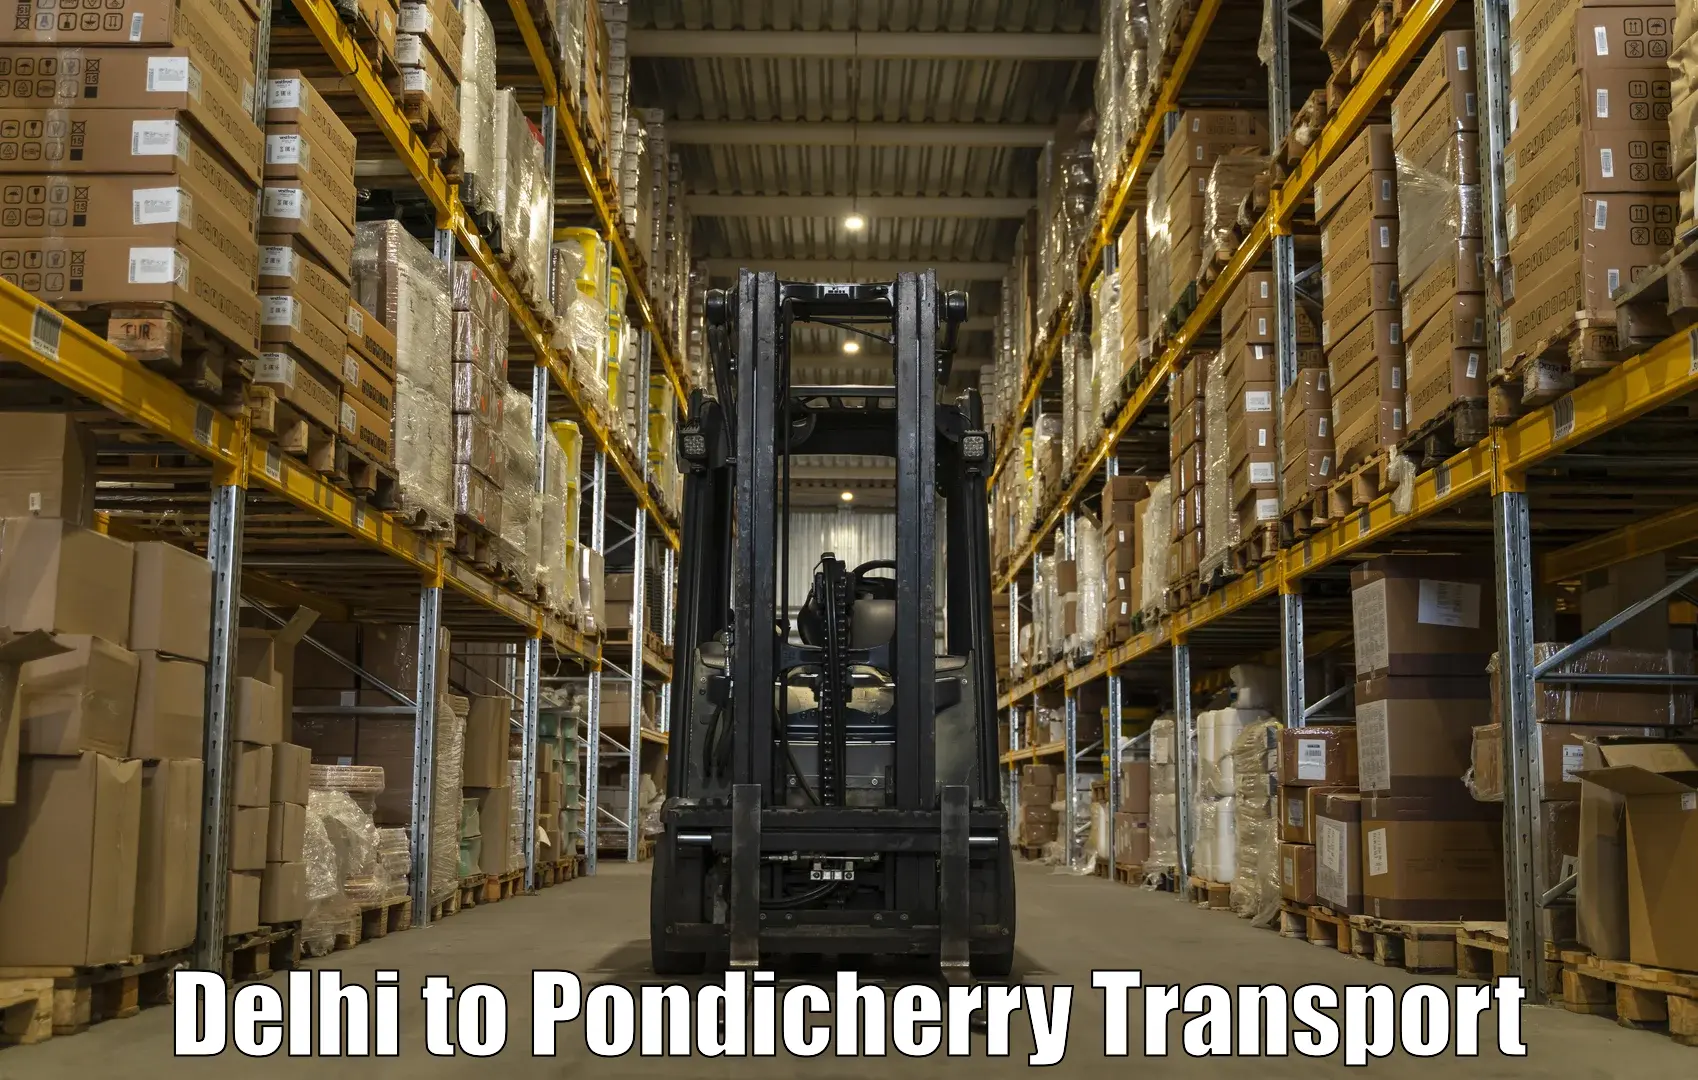 Land transport services Delhi to Pondicherry